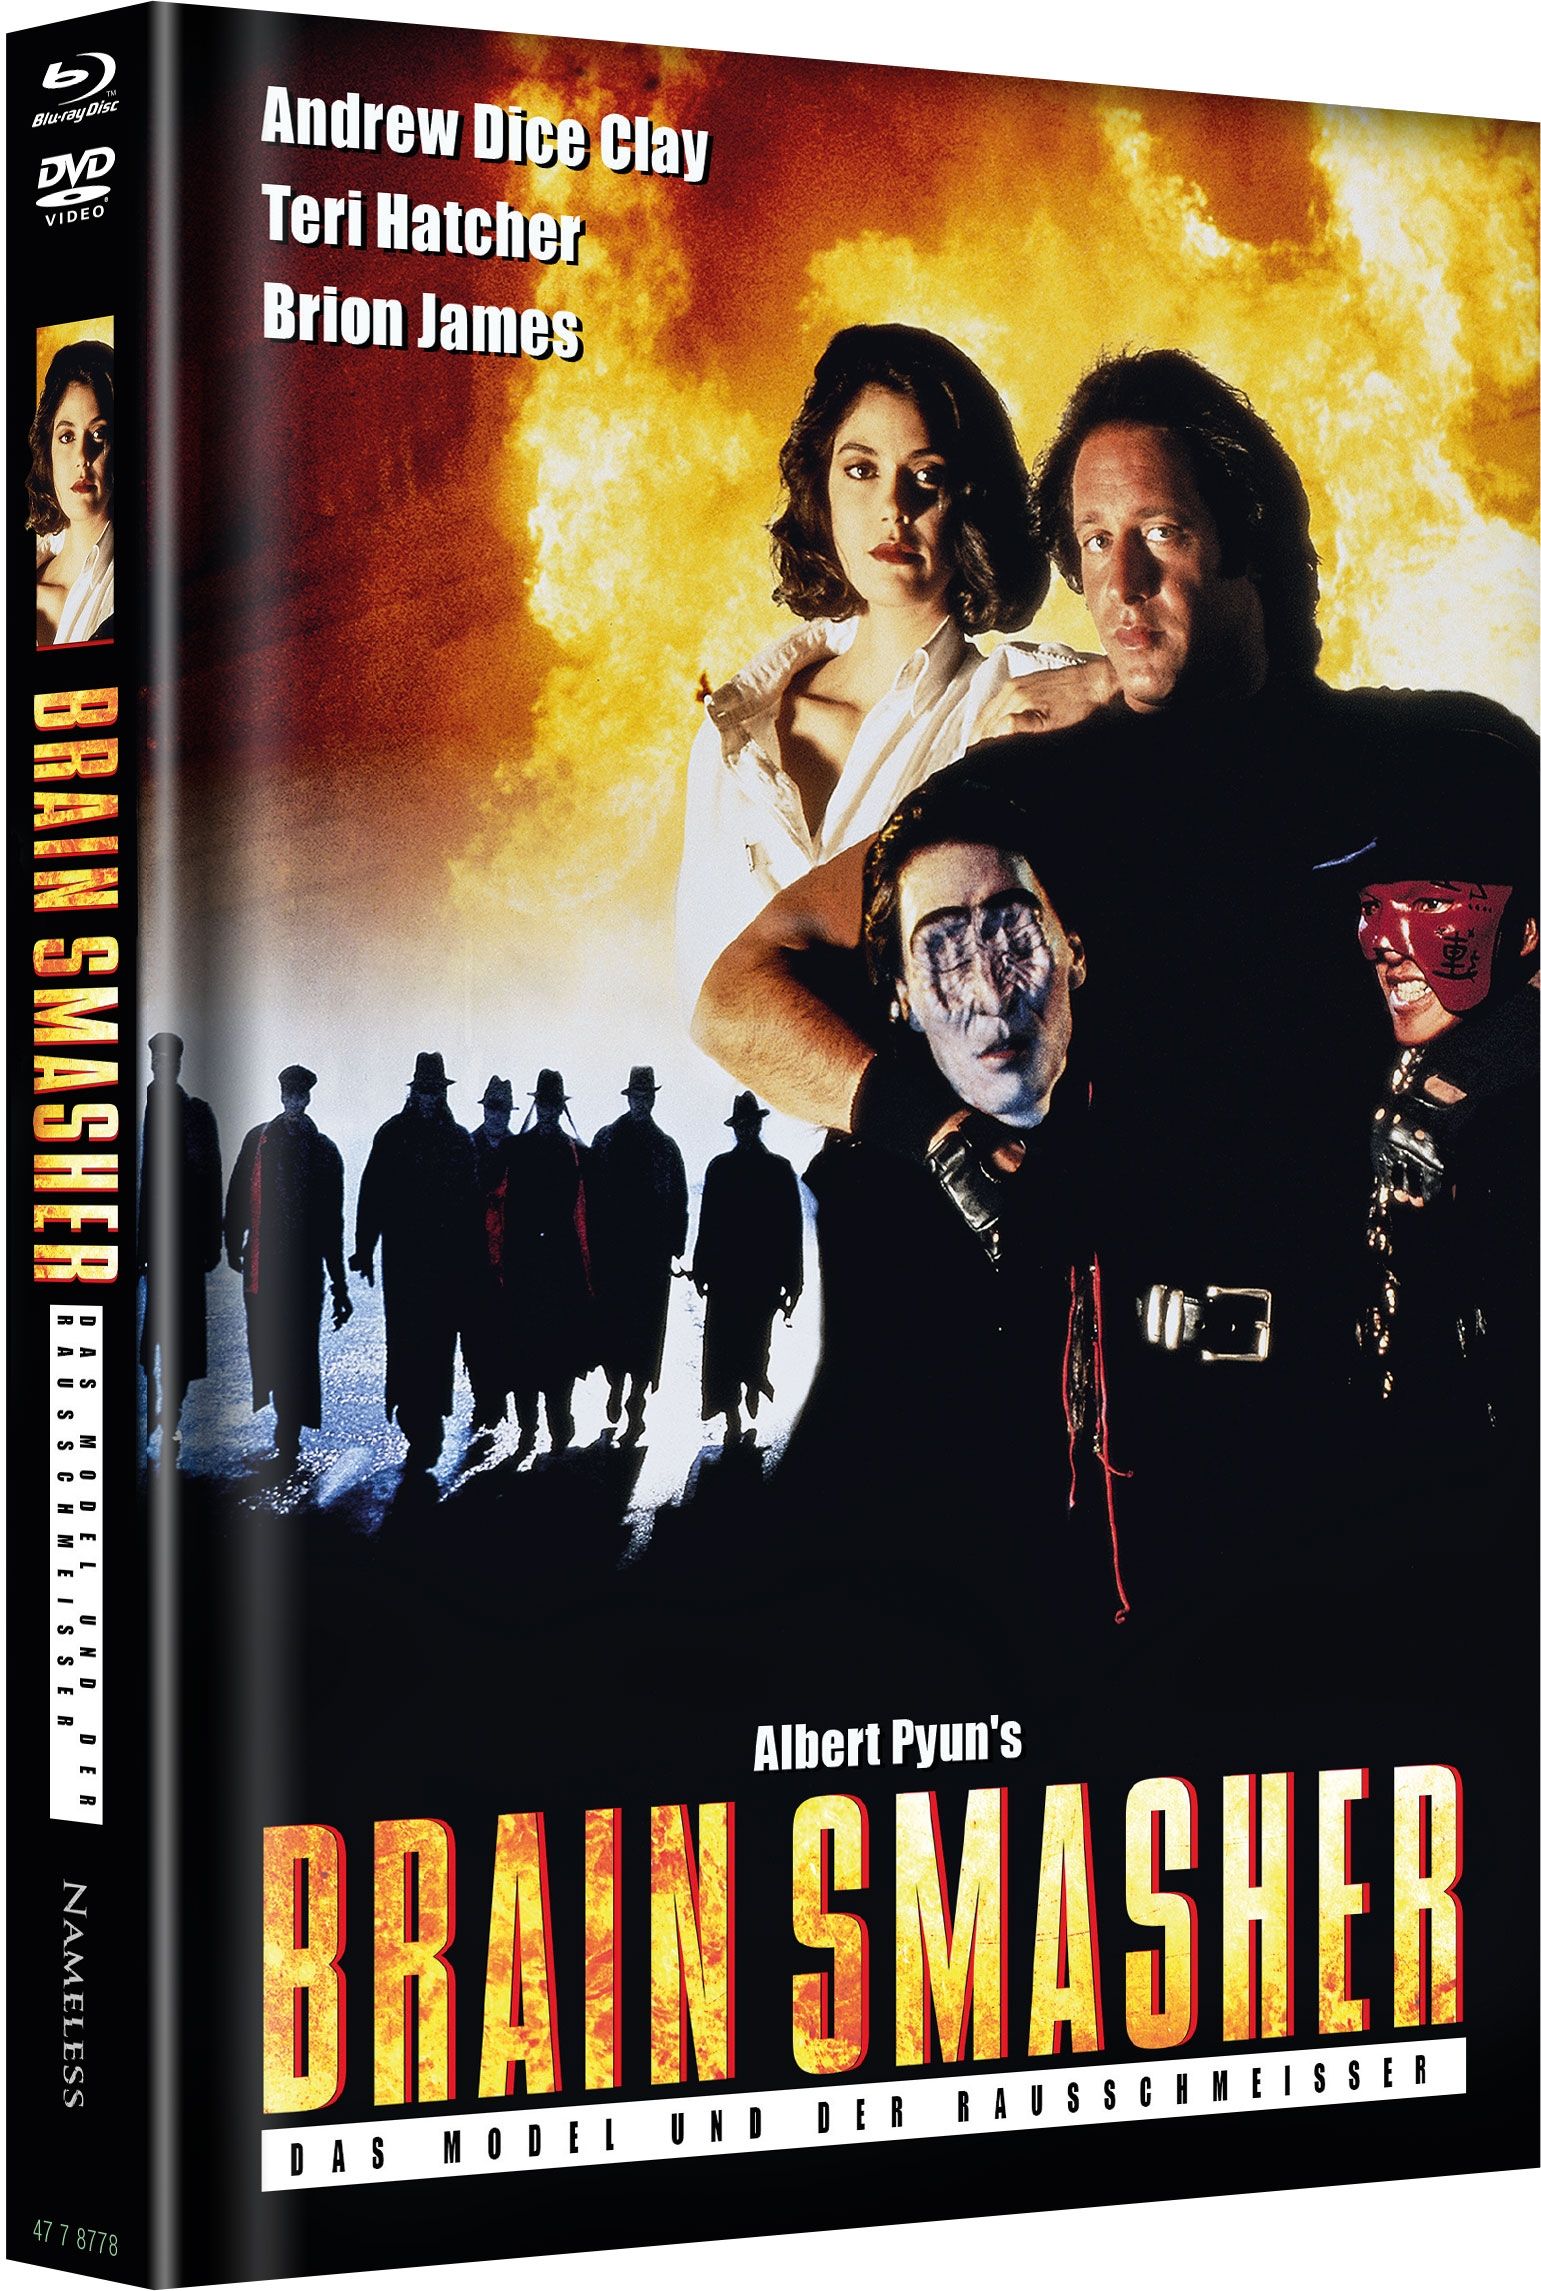 Brain Smasher - Das Model und der Rausschmeisser (Lim. Uncut Mediabook - Cover A) (Nameless Auflage) (DVD + BLURAY)